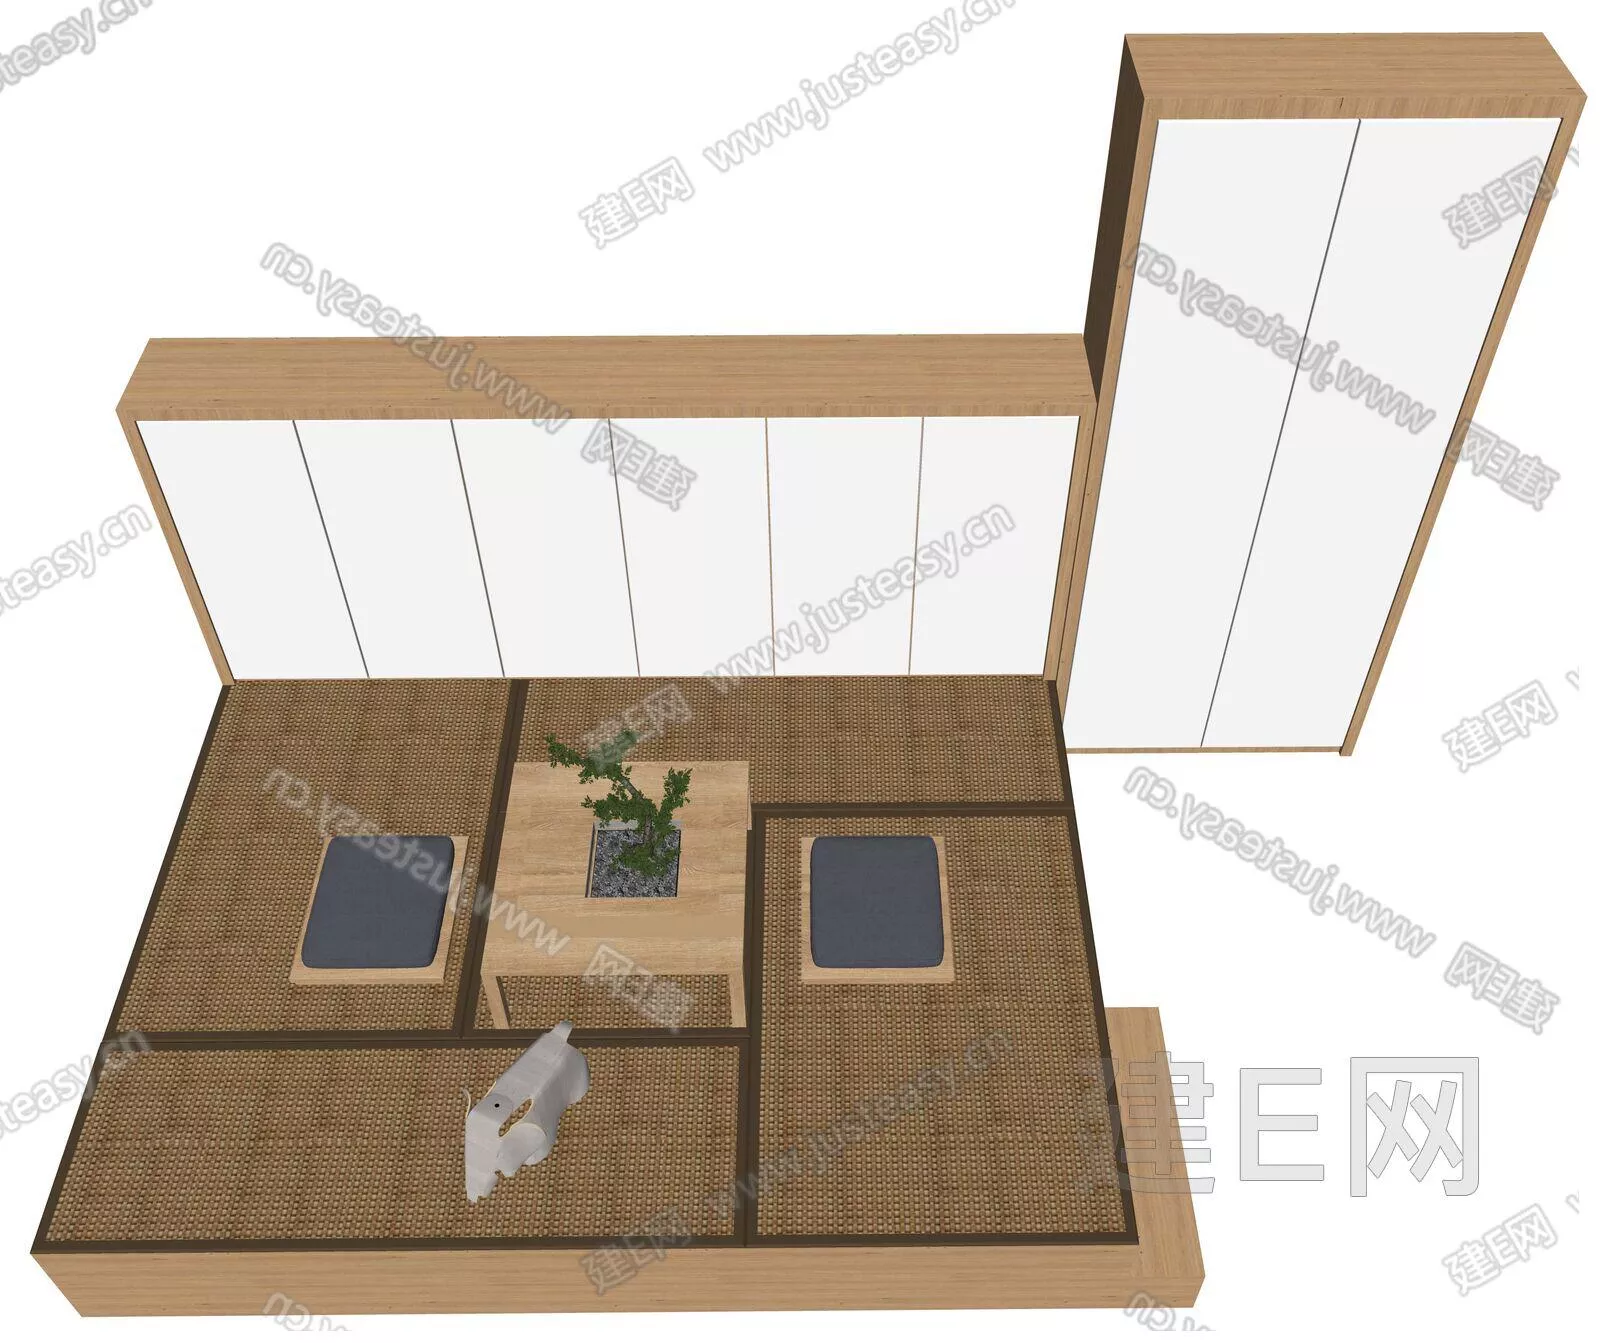 JAPANESE WARDROBE SHELF - SKETCHUP 3D MODEL - ENSCAPE - 112214500